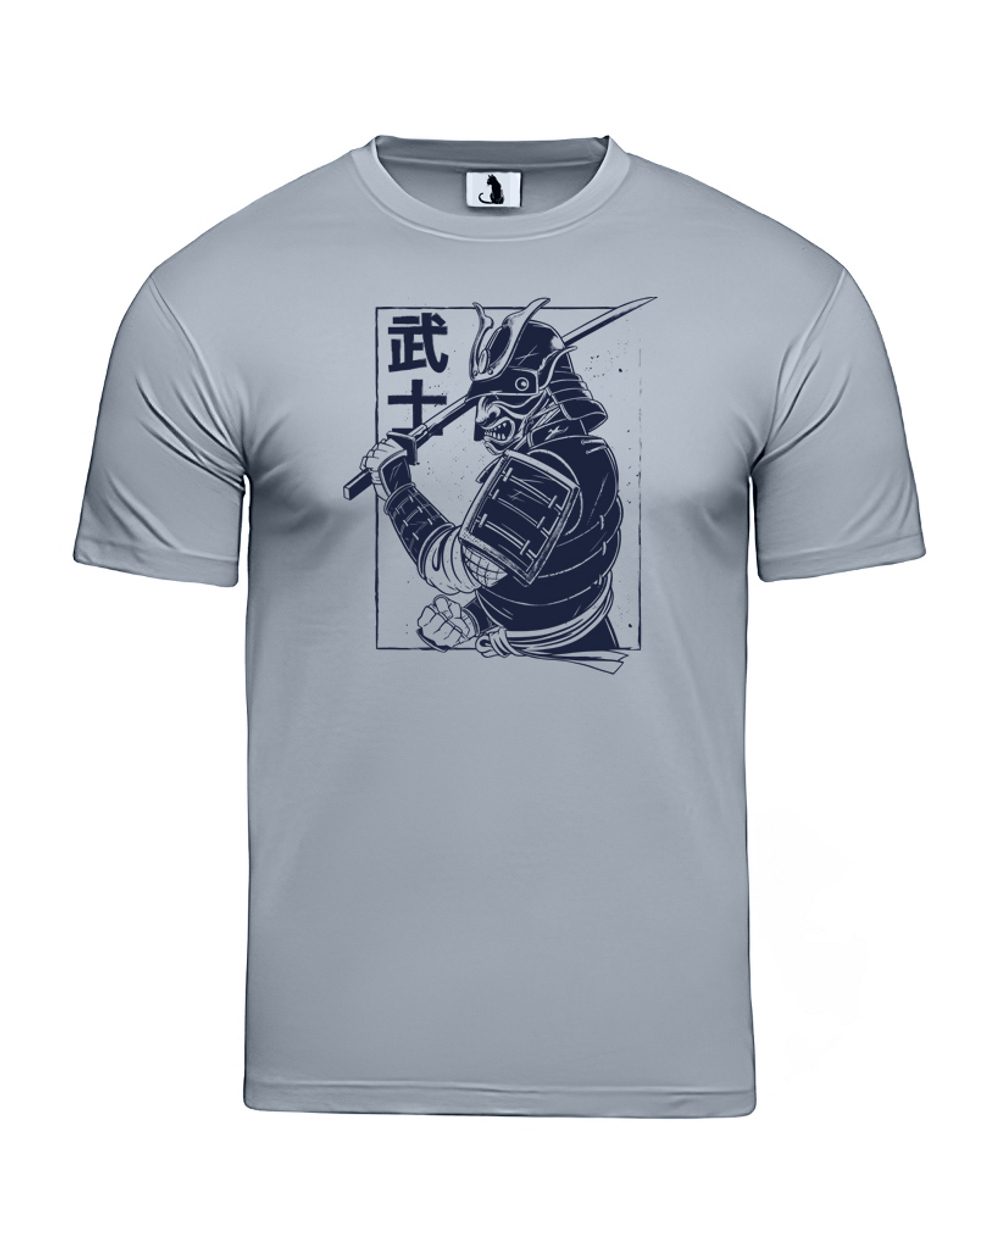 Футболка с самураем мужская серая с синим рисунком